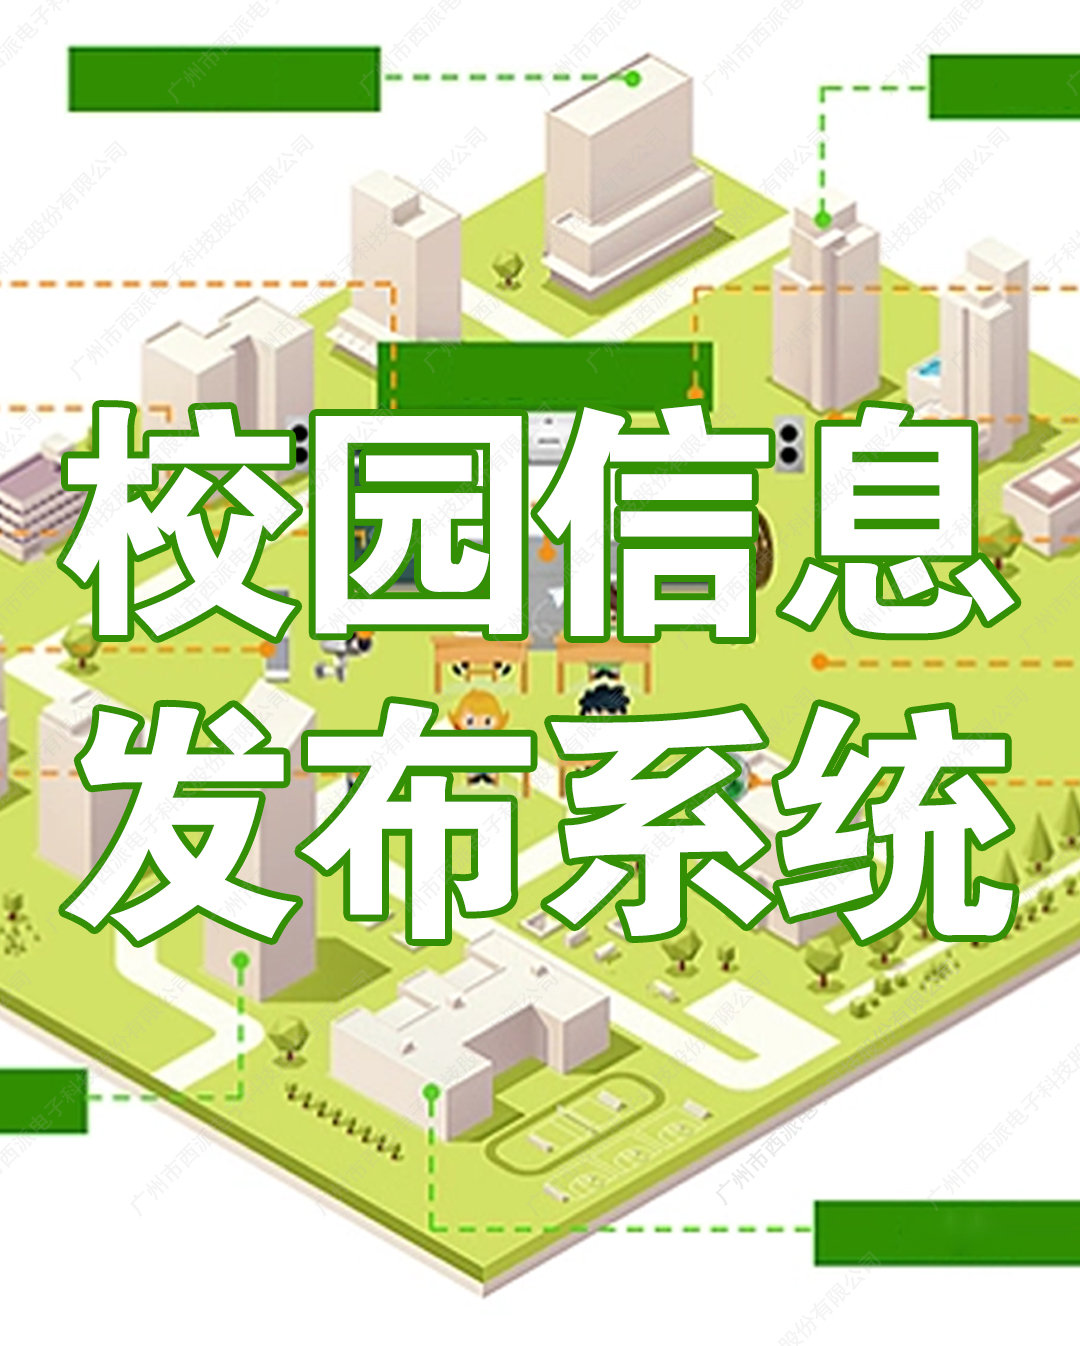 廣州校園信息發布系統